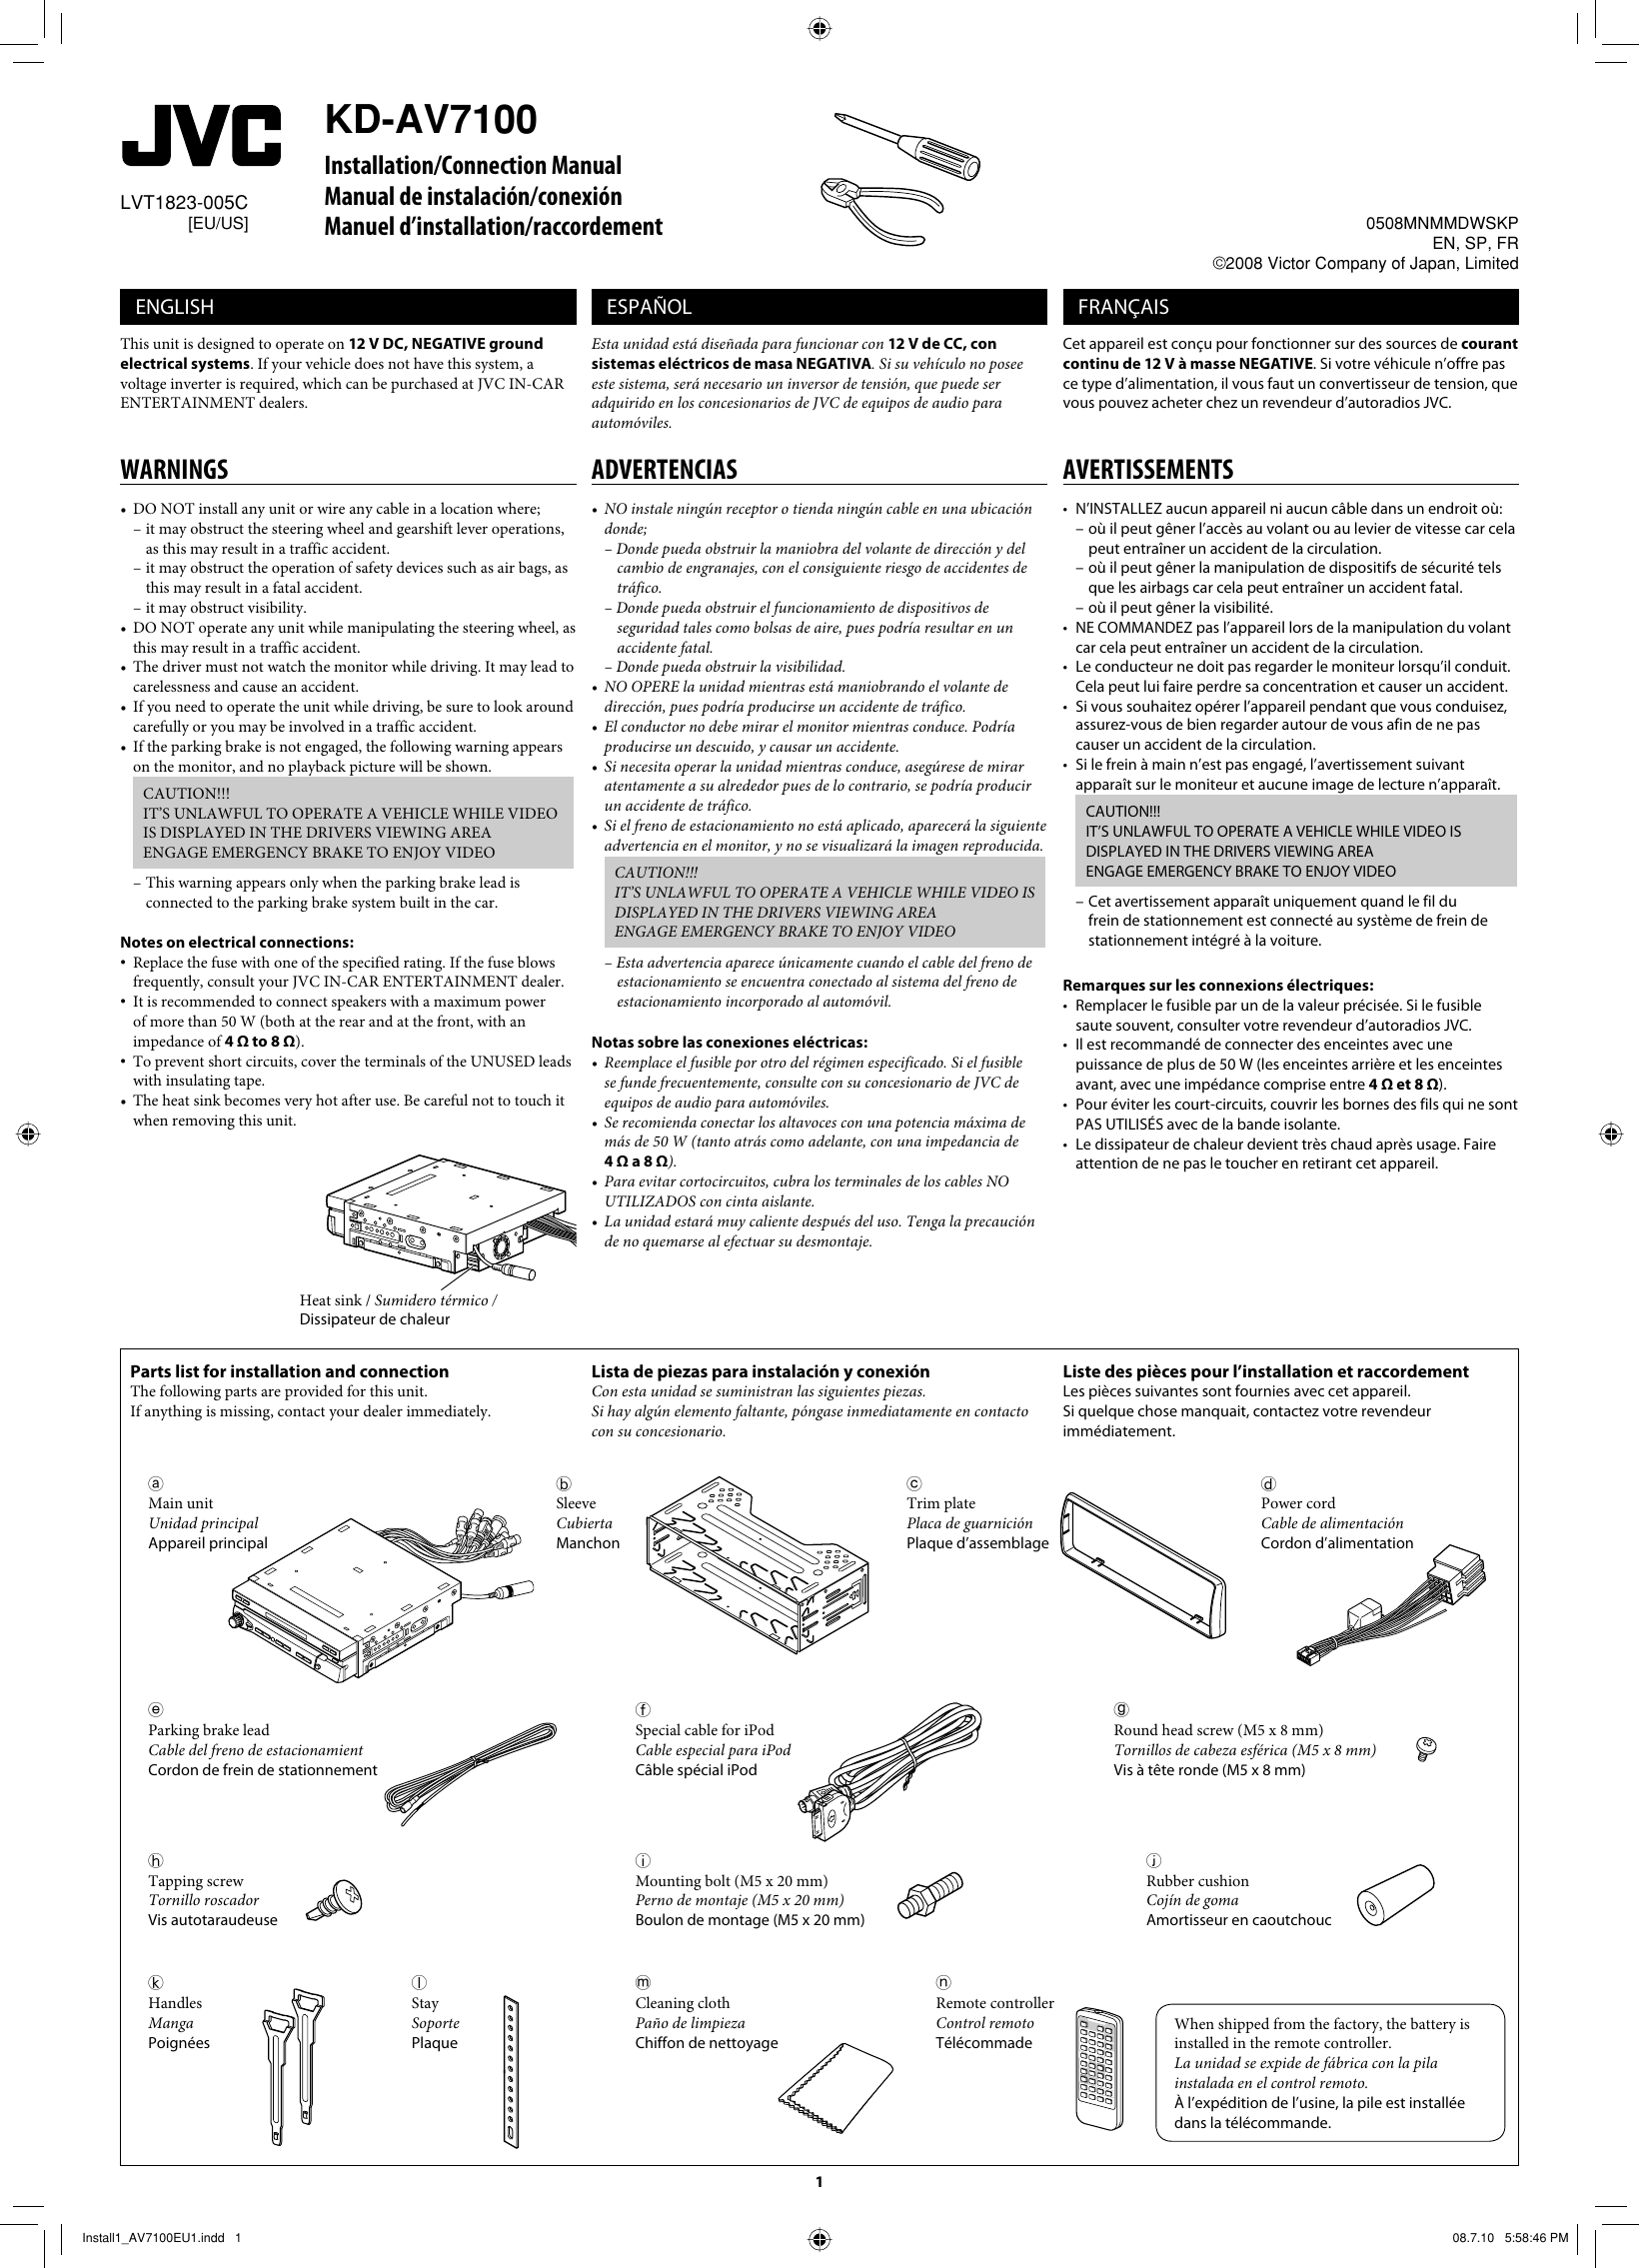 Page 1 of 6 - JVC KD-AV7100EUKD-AV7100US KD-AV7100[EU/US] INSTALL MANUAL User LVT1823-005C